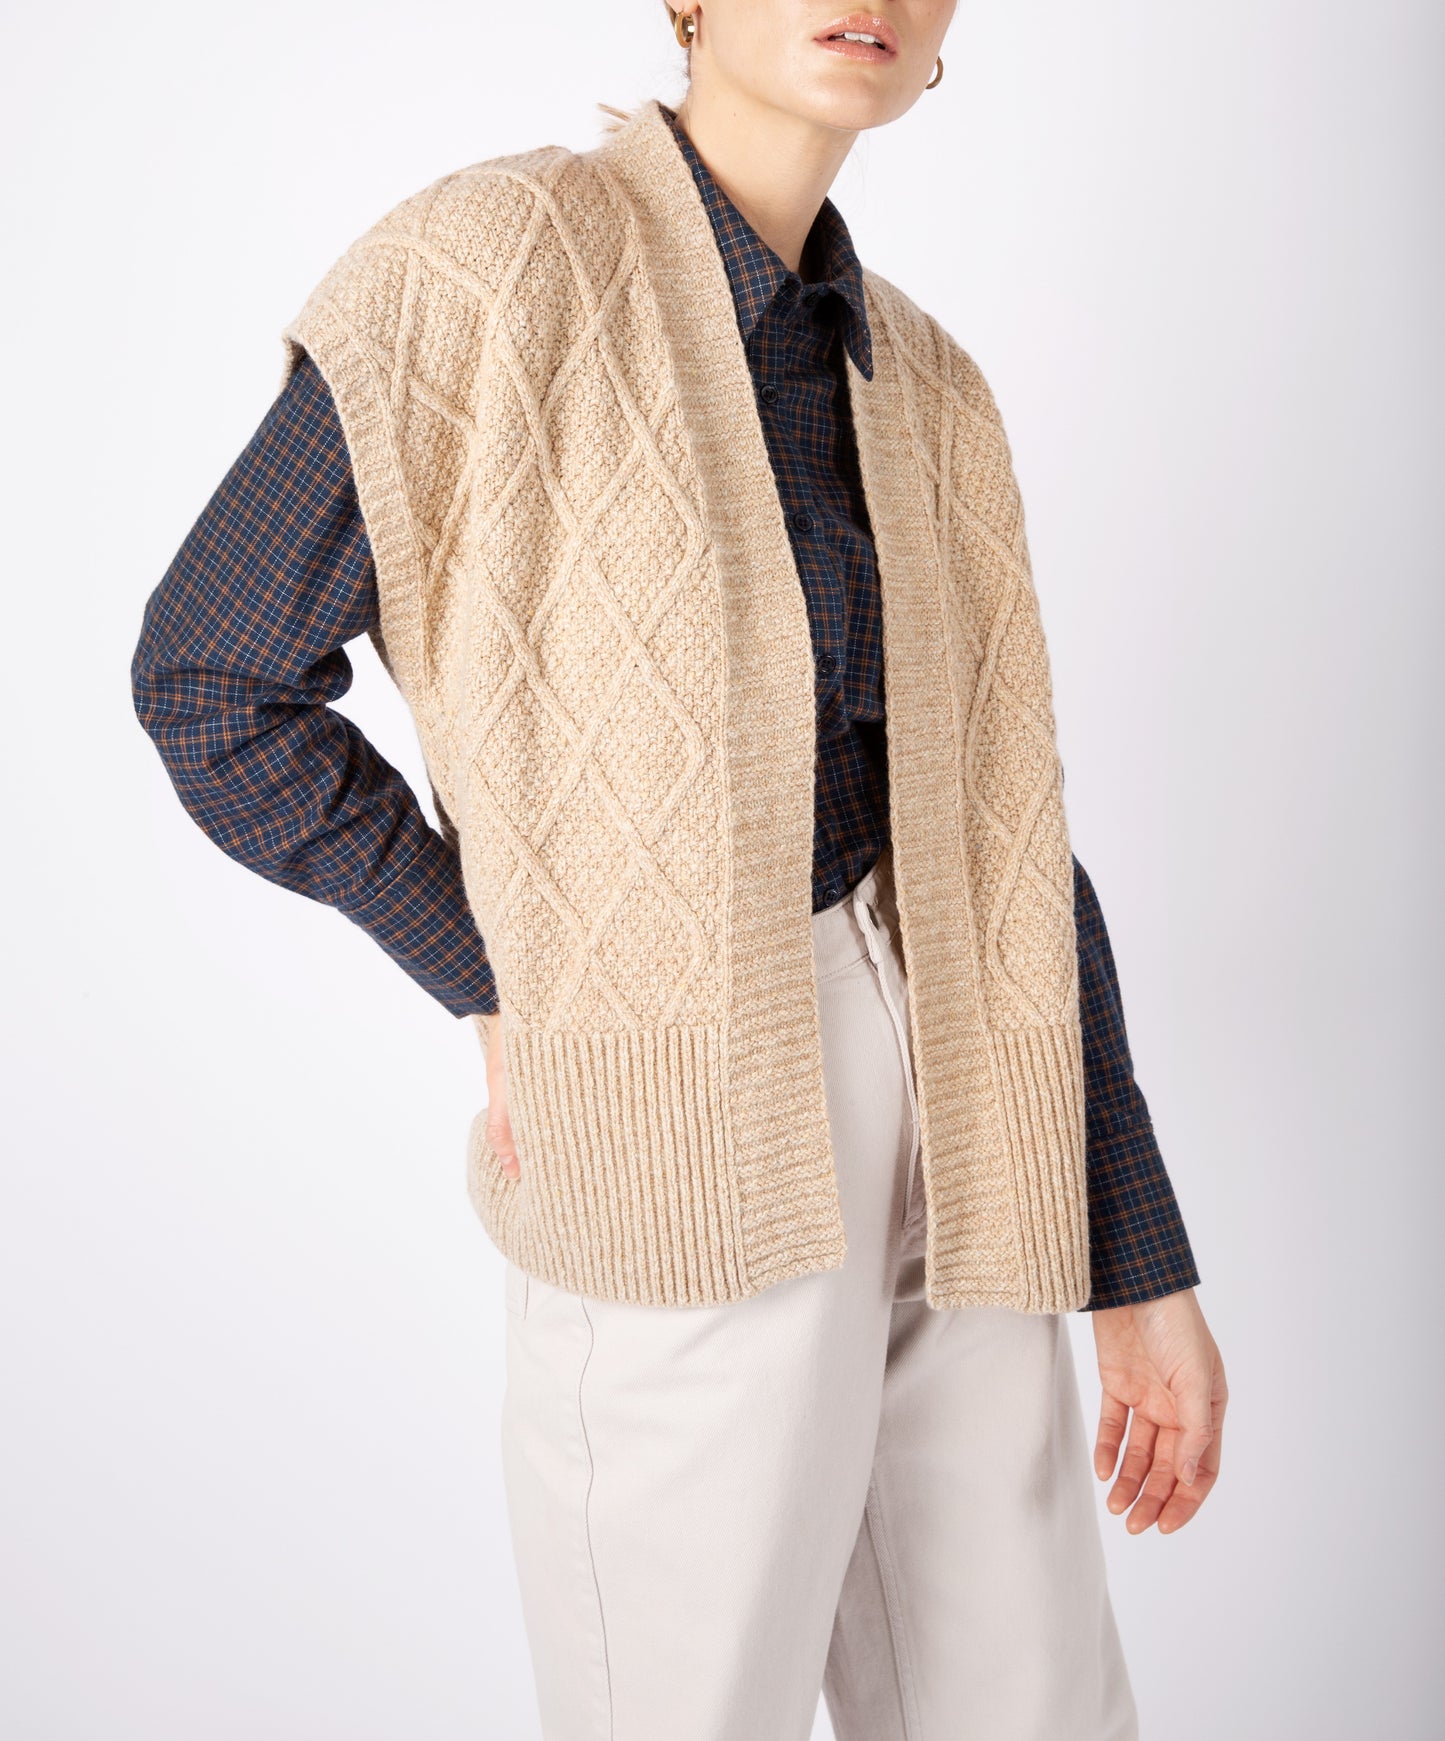 IrelandsEye Knitwear Women's Knitted 'Nettle' Diamond Pattern Vest in Seashell